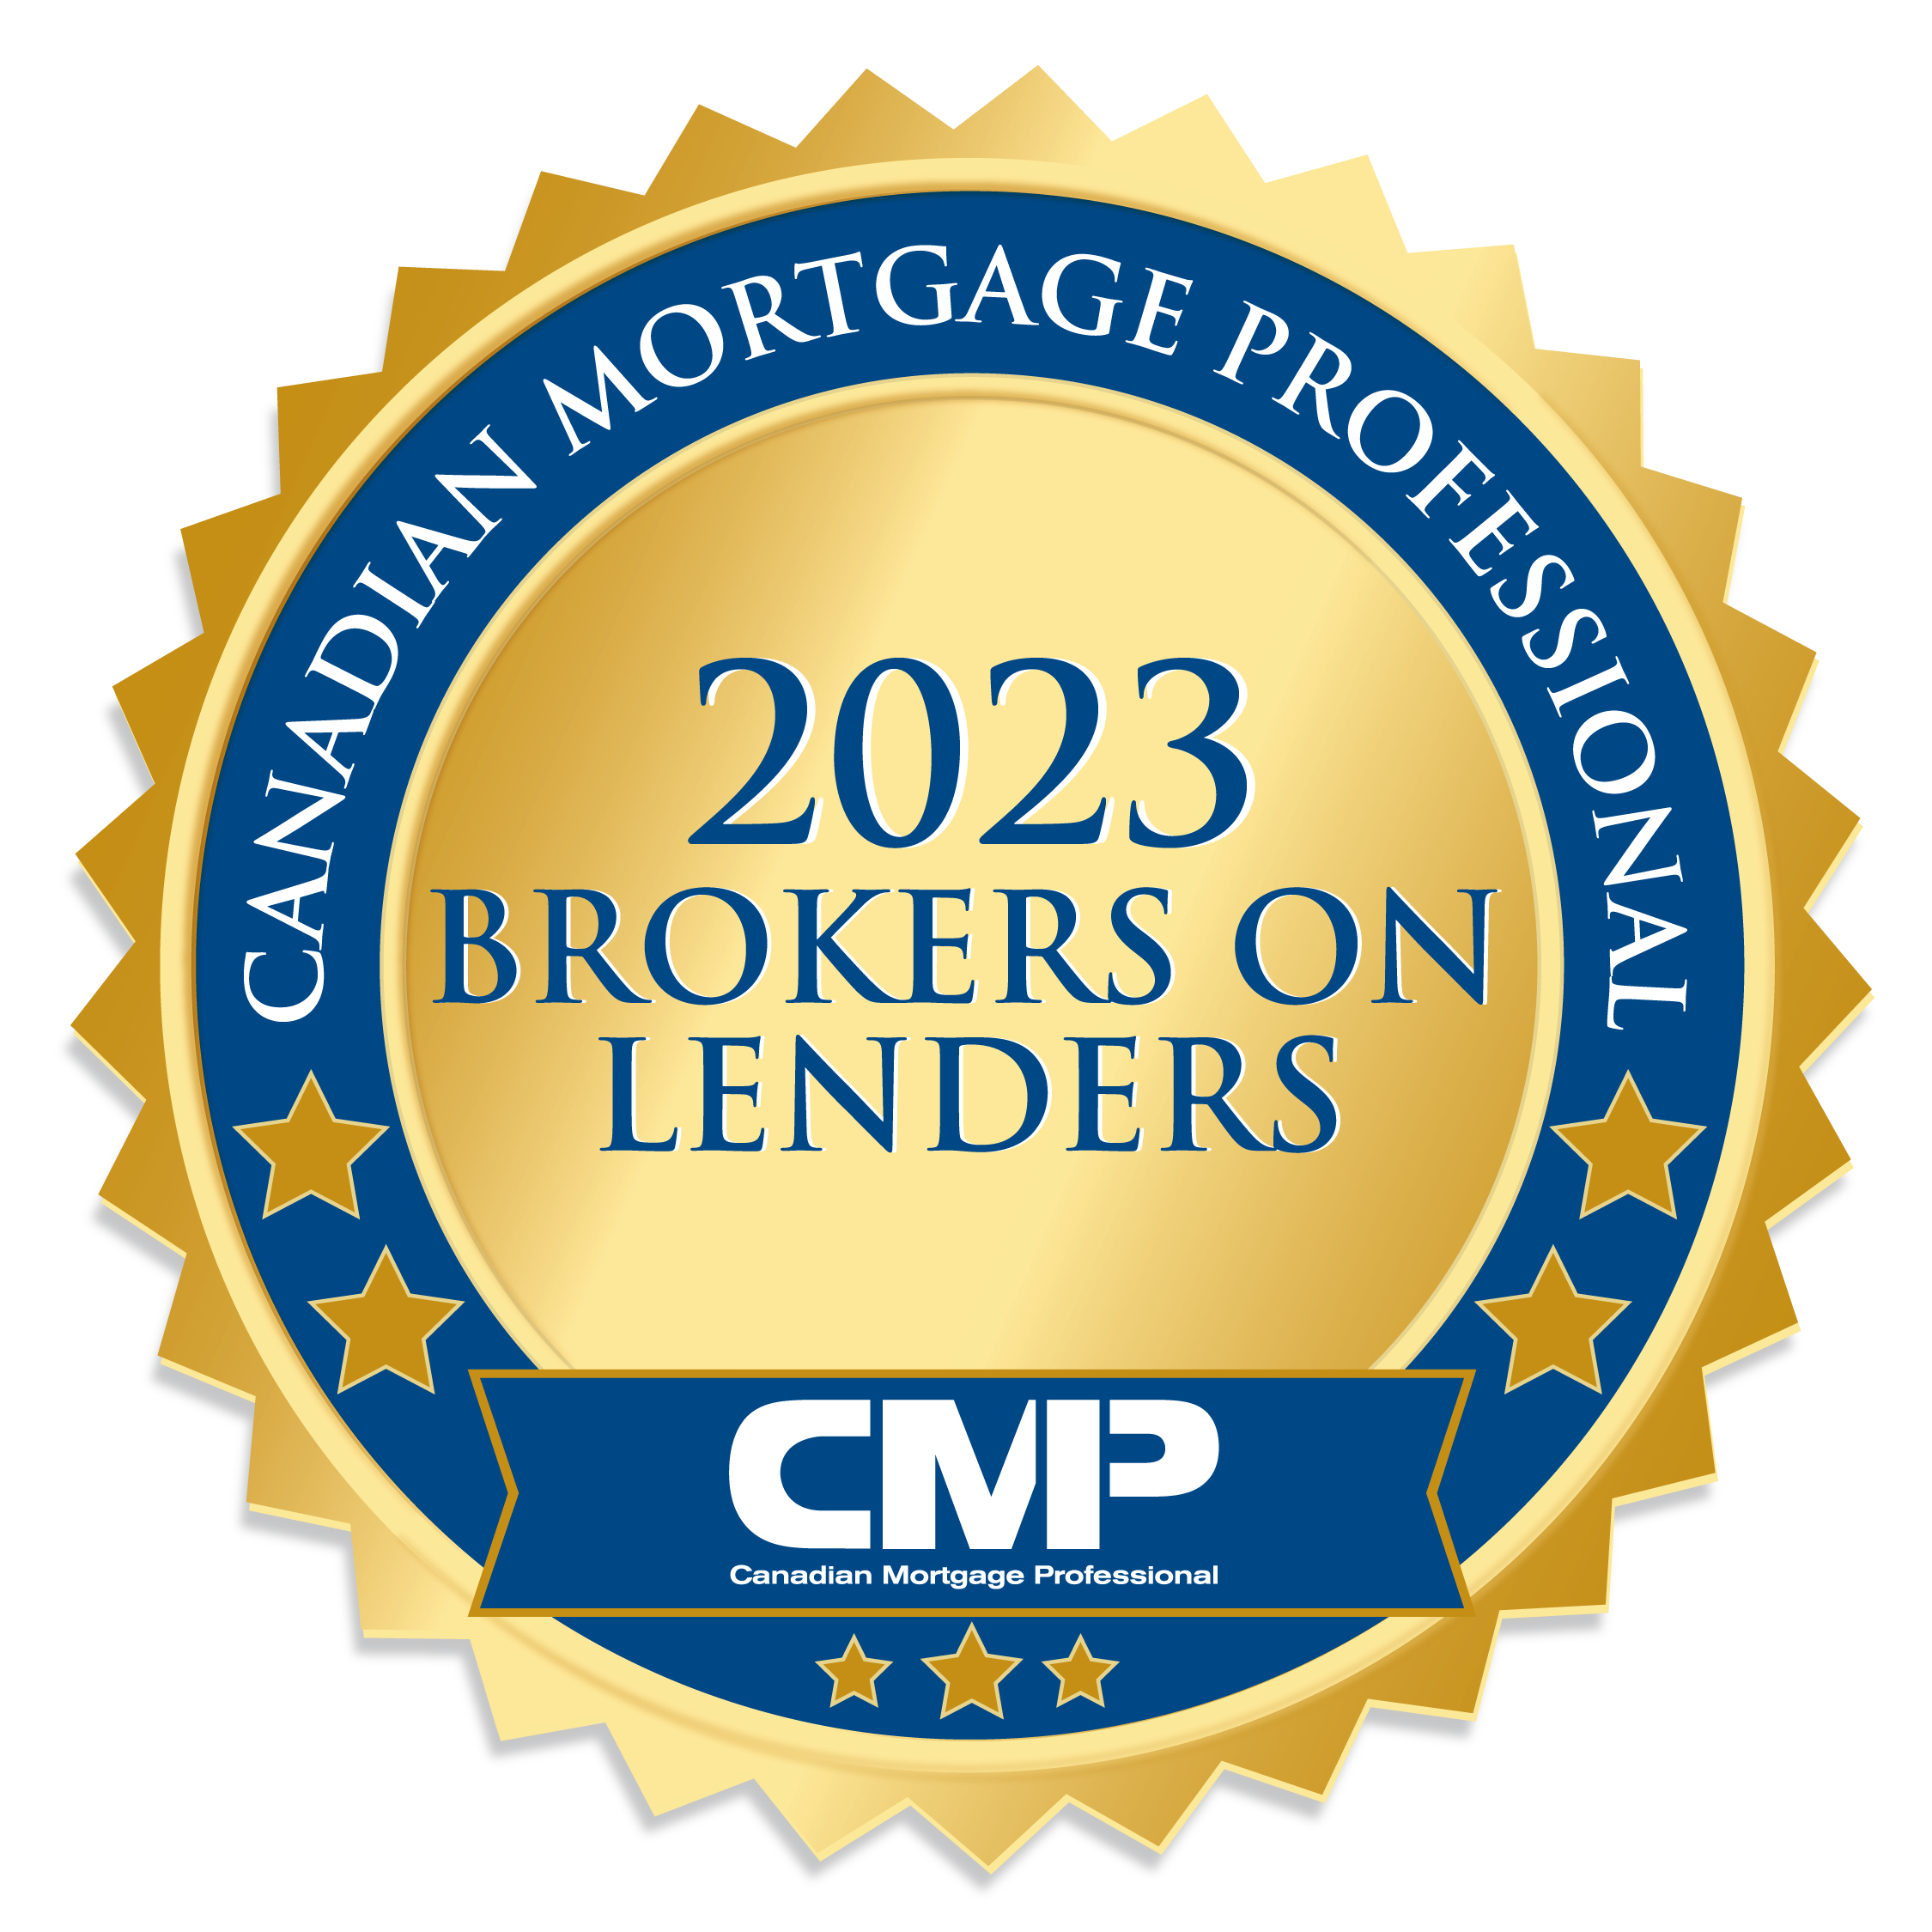 Best Mortgage Lenders in Canada |  Brokers on Lenders 2023